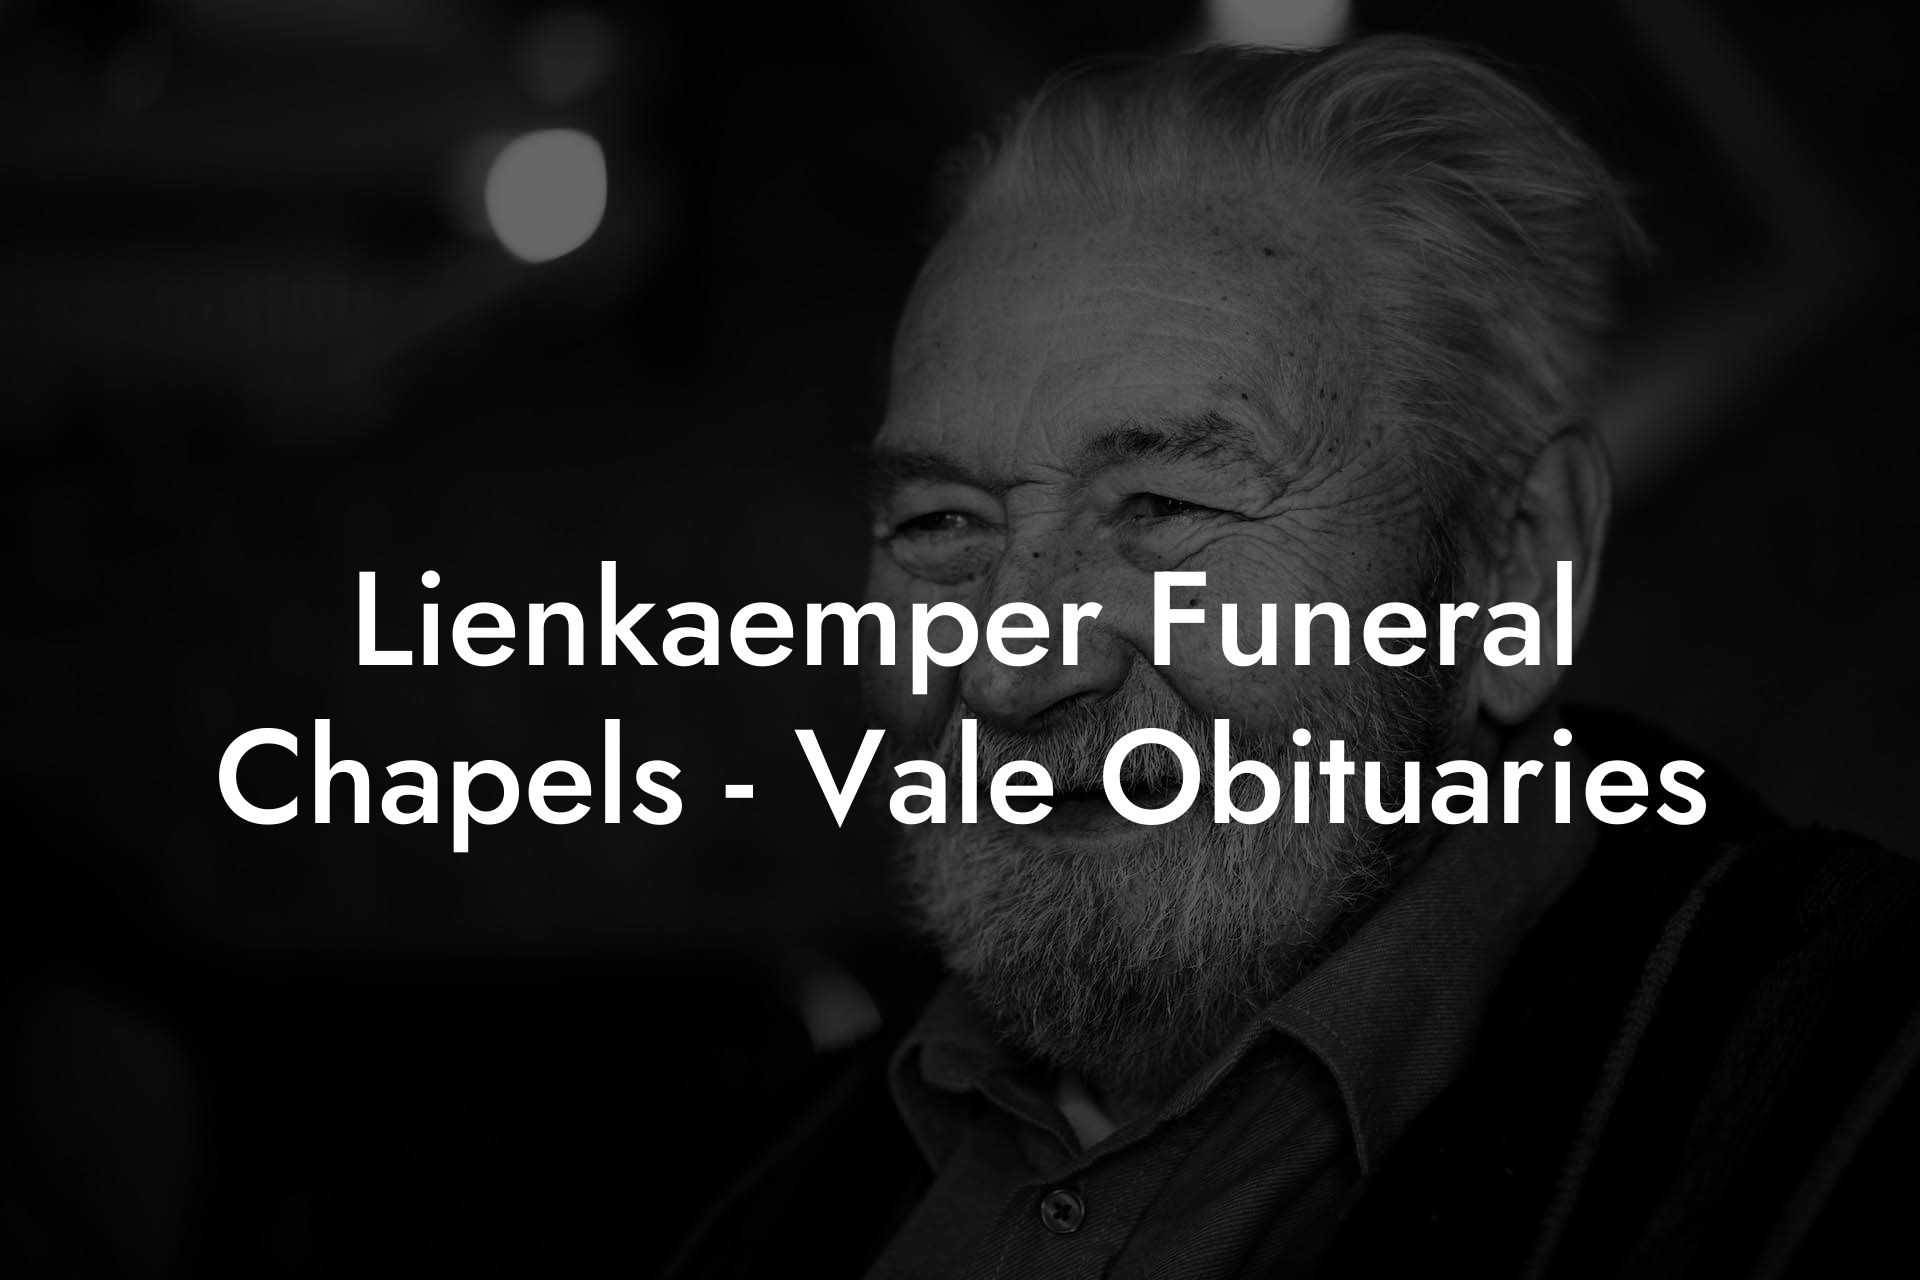 Lienkaemper Funeral Chapels - Vale Obituaries